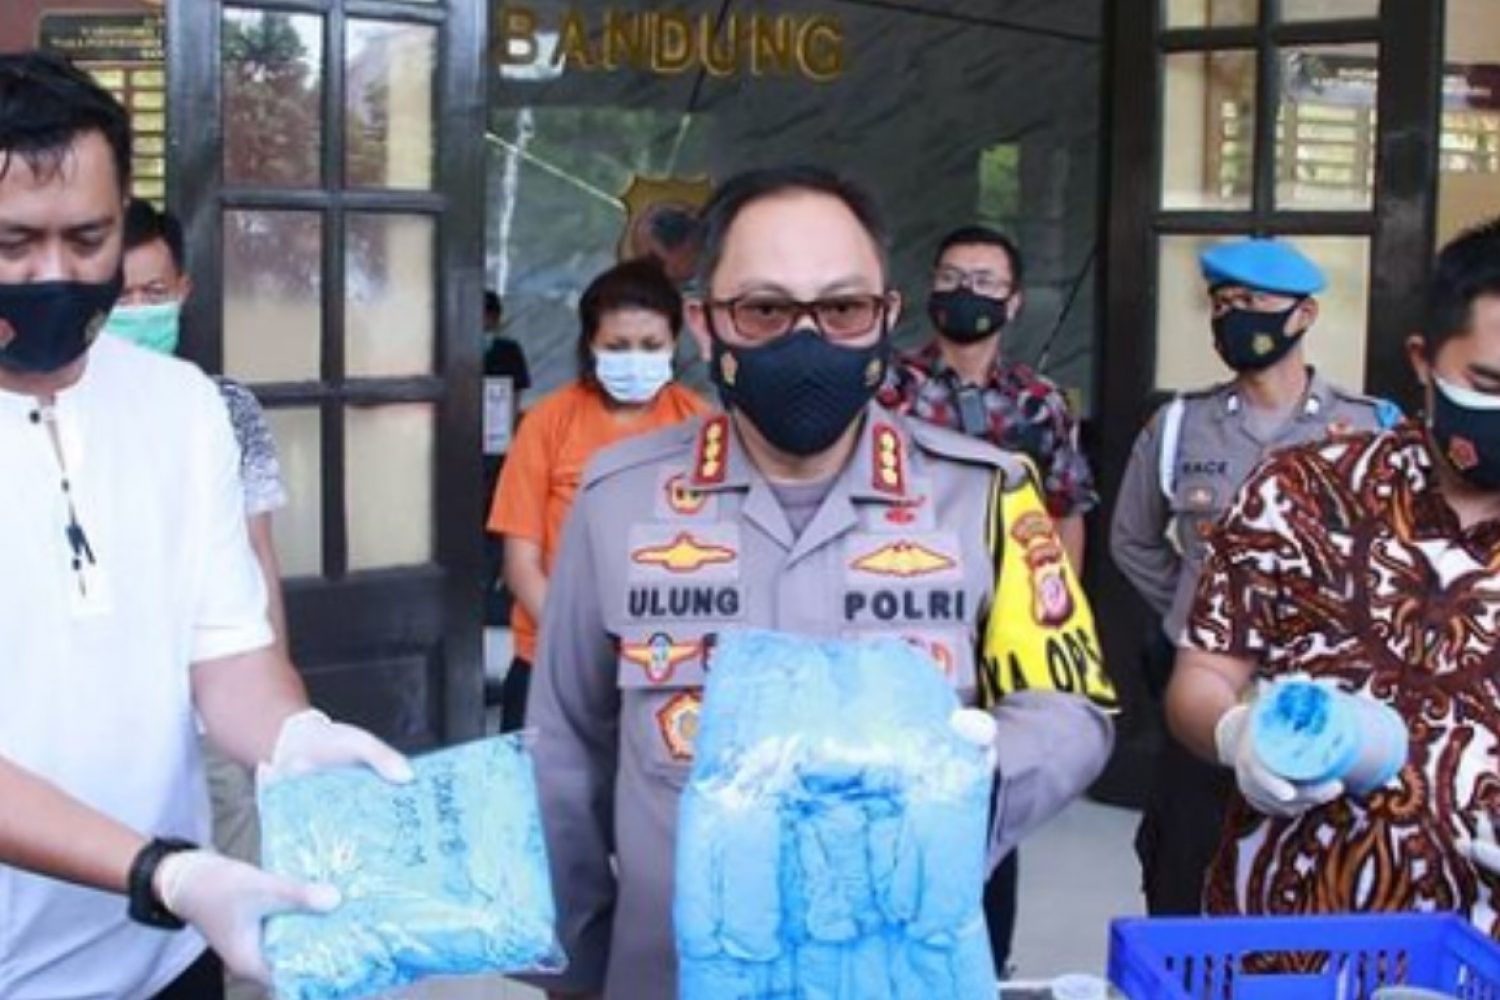 Kapolrestabes Bandung Kombes Pol Ulung Sampurna Jaya, S.I.K.,M.H saat ungkap kasus sarung karet bekas daur ulang